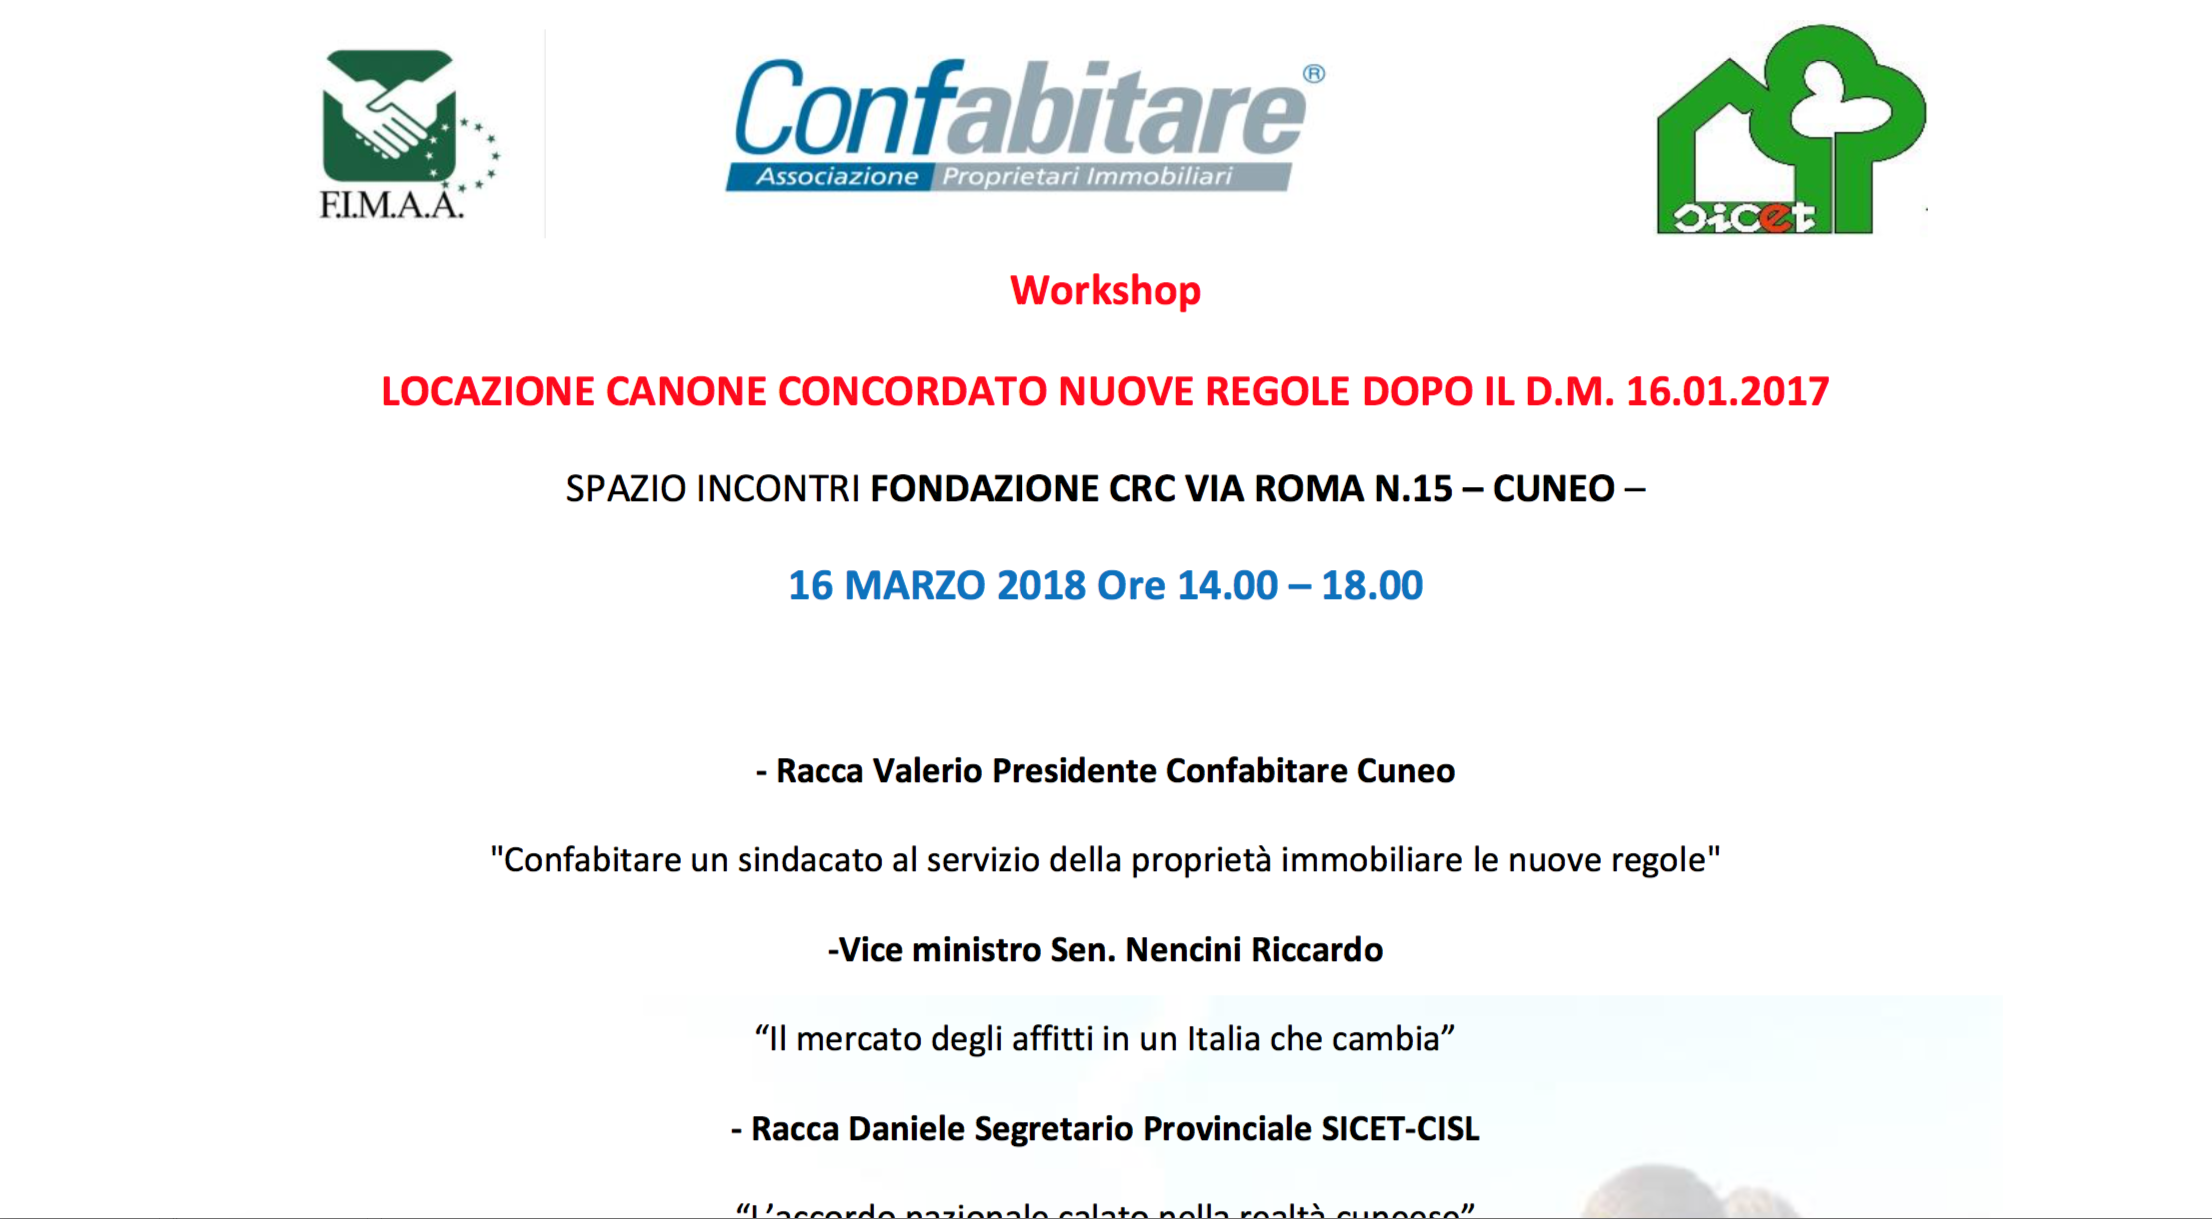 Workshop Cuneo – Locazione canone concordato nuove regole dopo il d.m. 16.01.2017